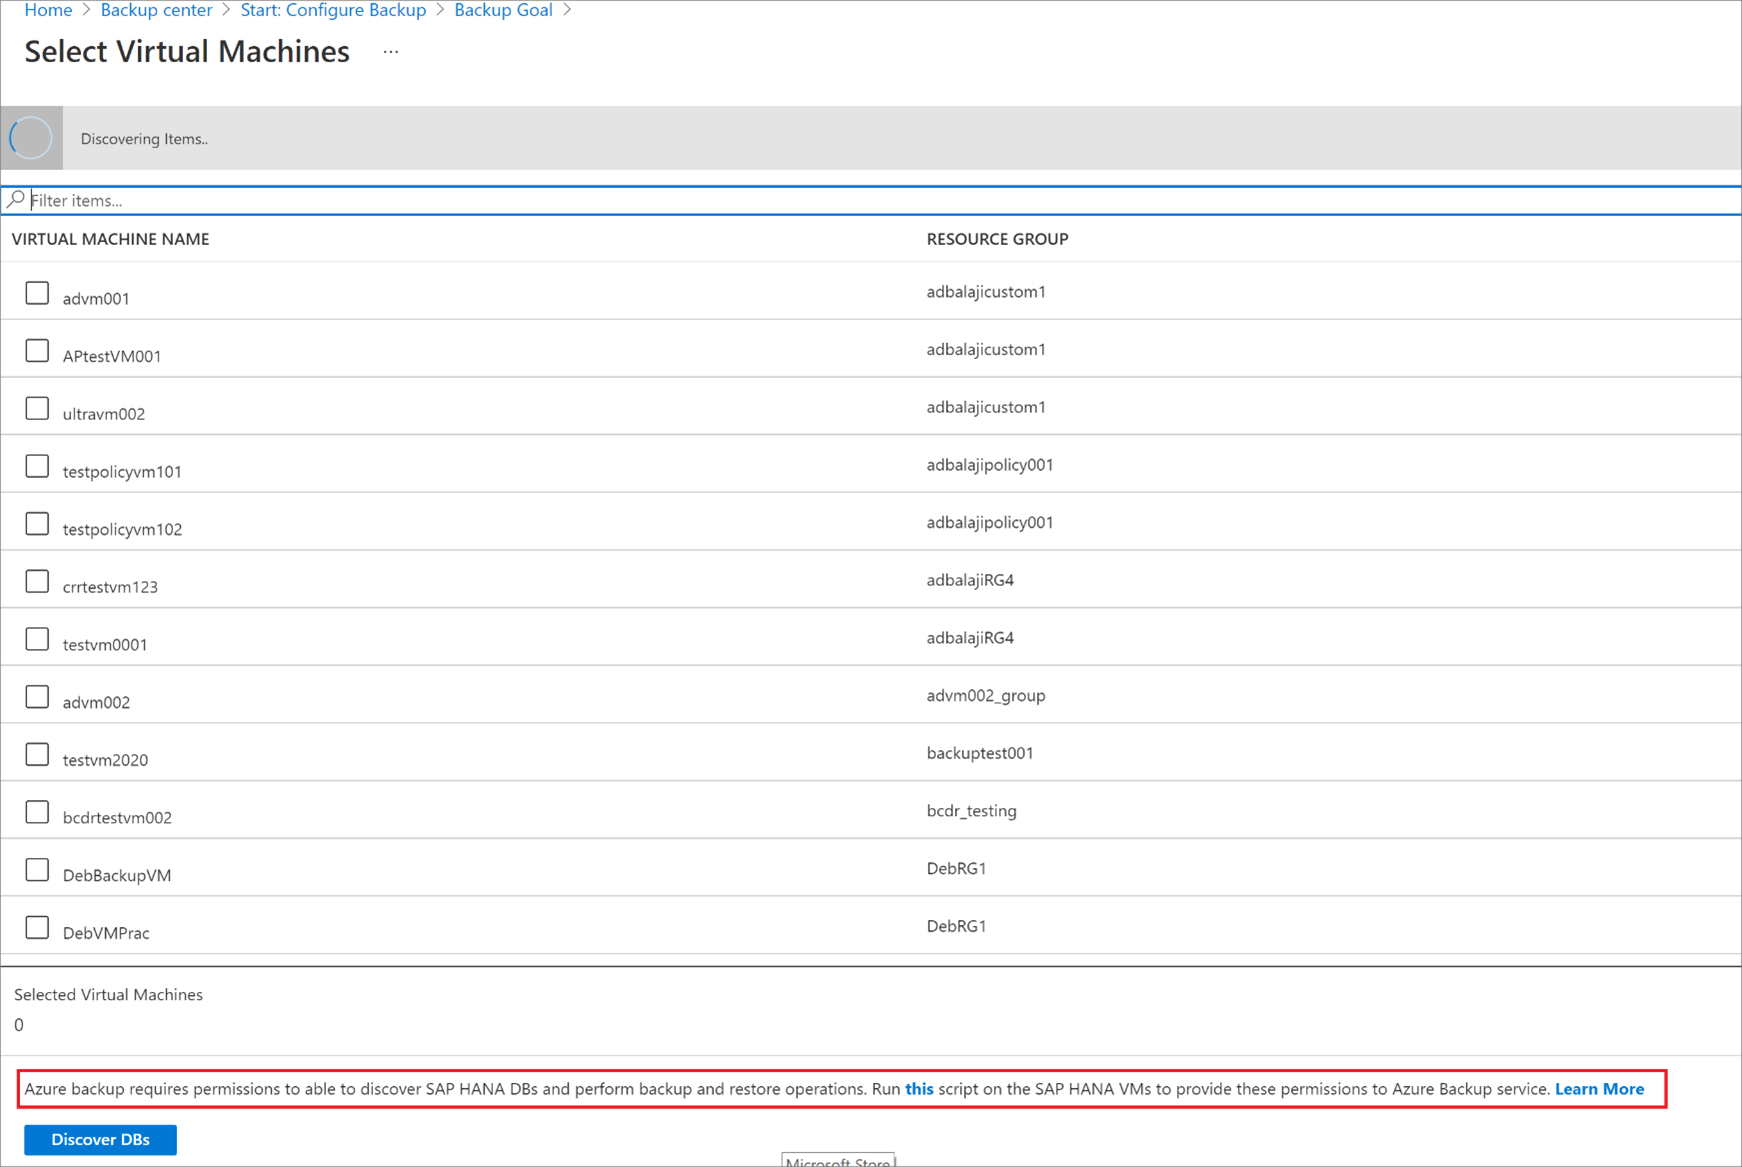 Bulunan SAP HANA veritabanlarını gösteren ekran görüntüsü.